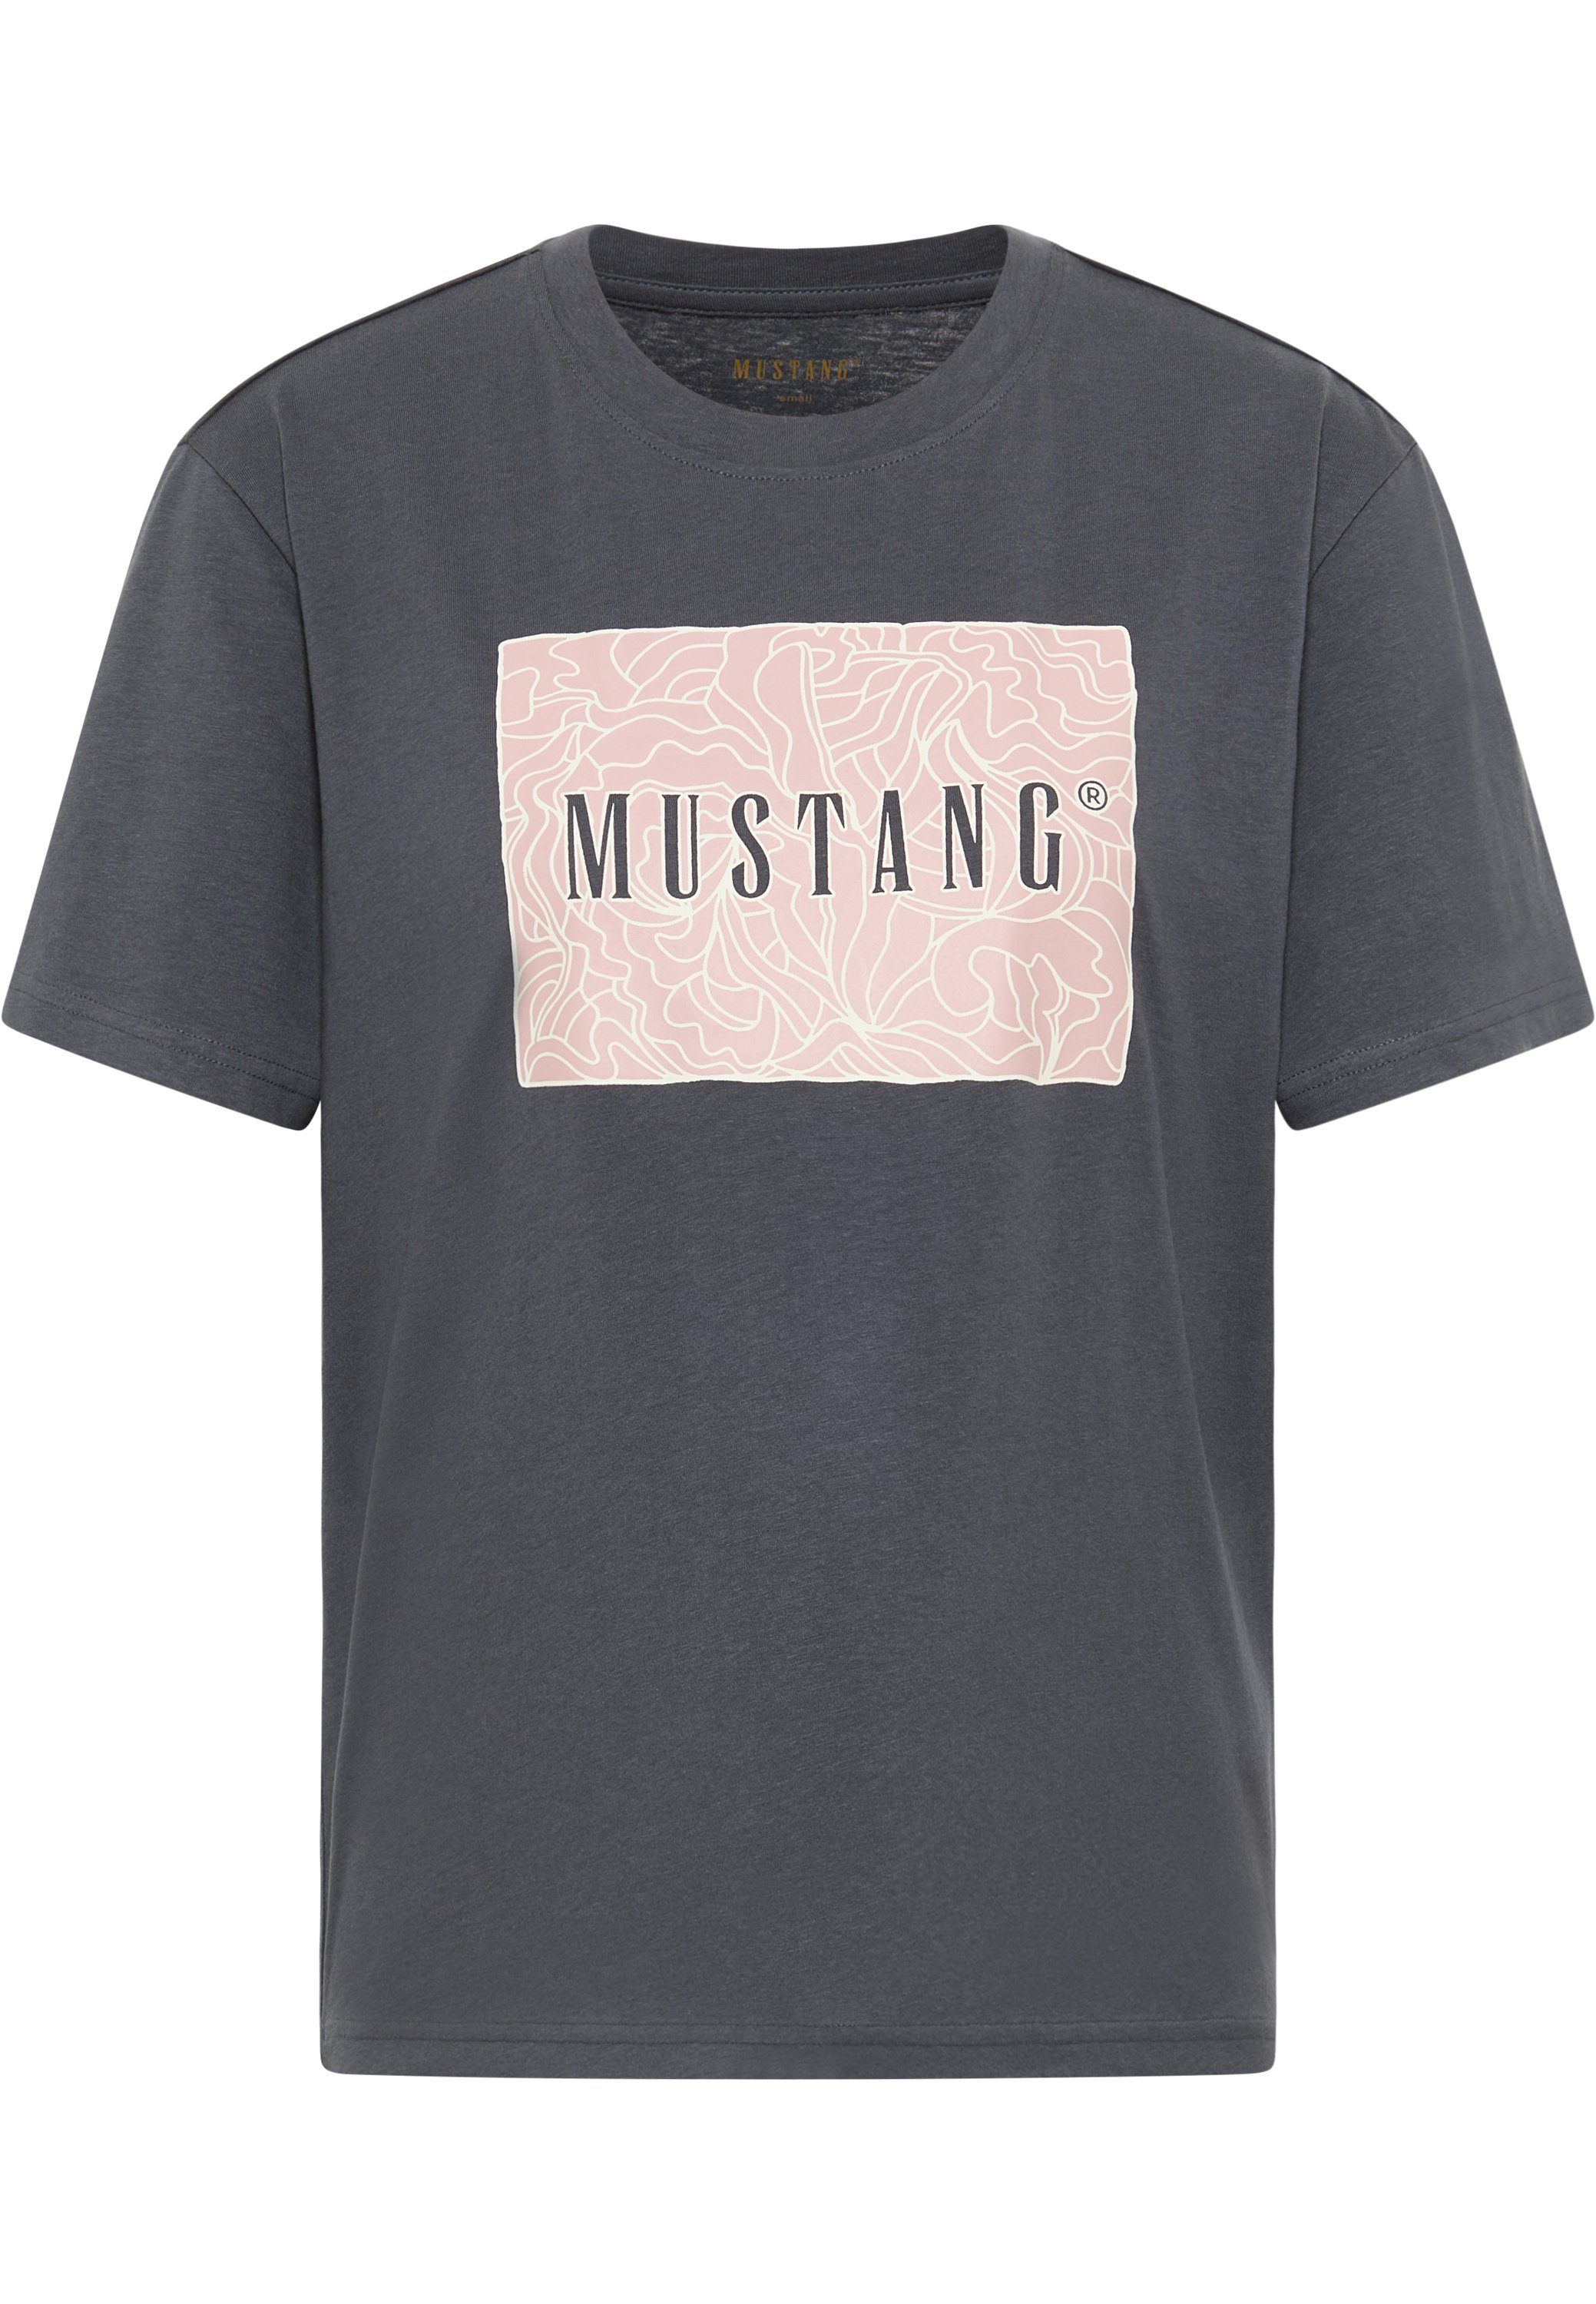 Mustang Shirts für Damen online kaufen | OTTO